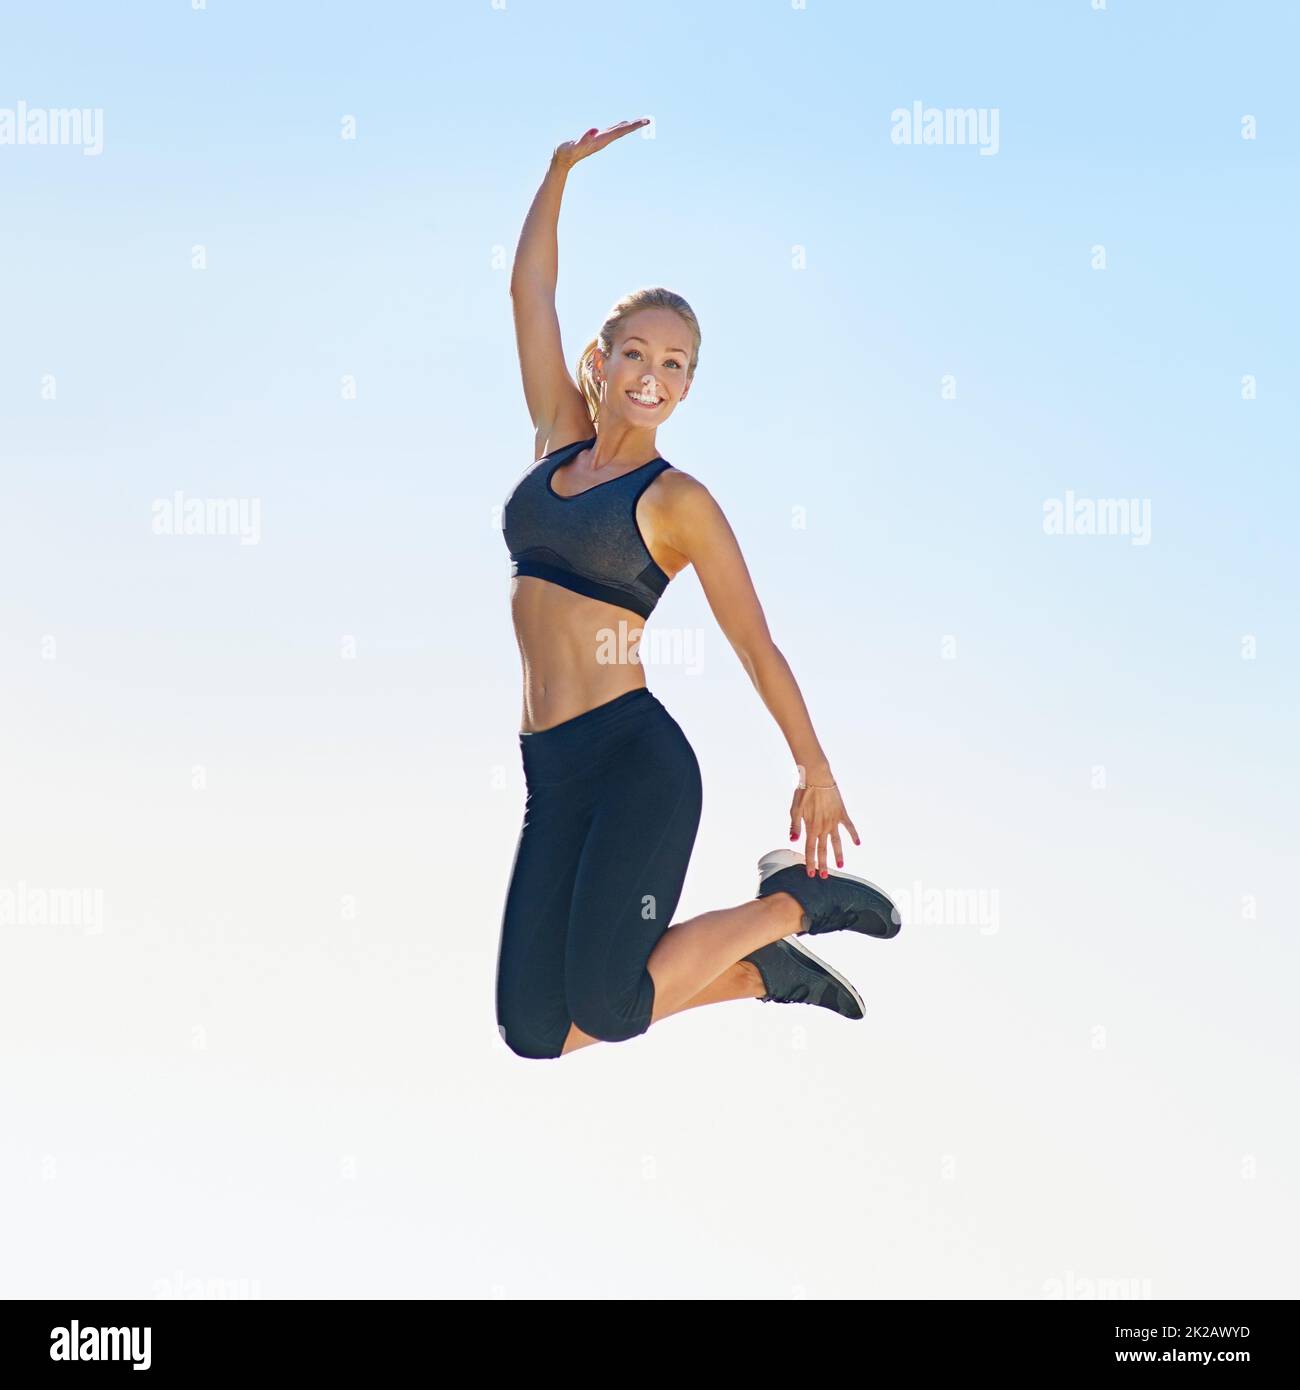 Es fühlt sich gut an, fit zu sein. Ganzkörperaufnahme einer sportlichen jungen Frau, die gegen einen blauen Himmel springt. Stockfoto